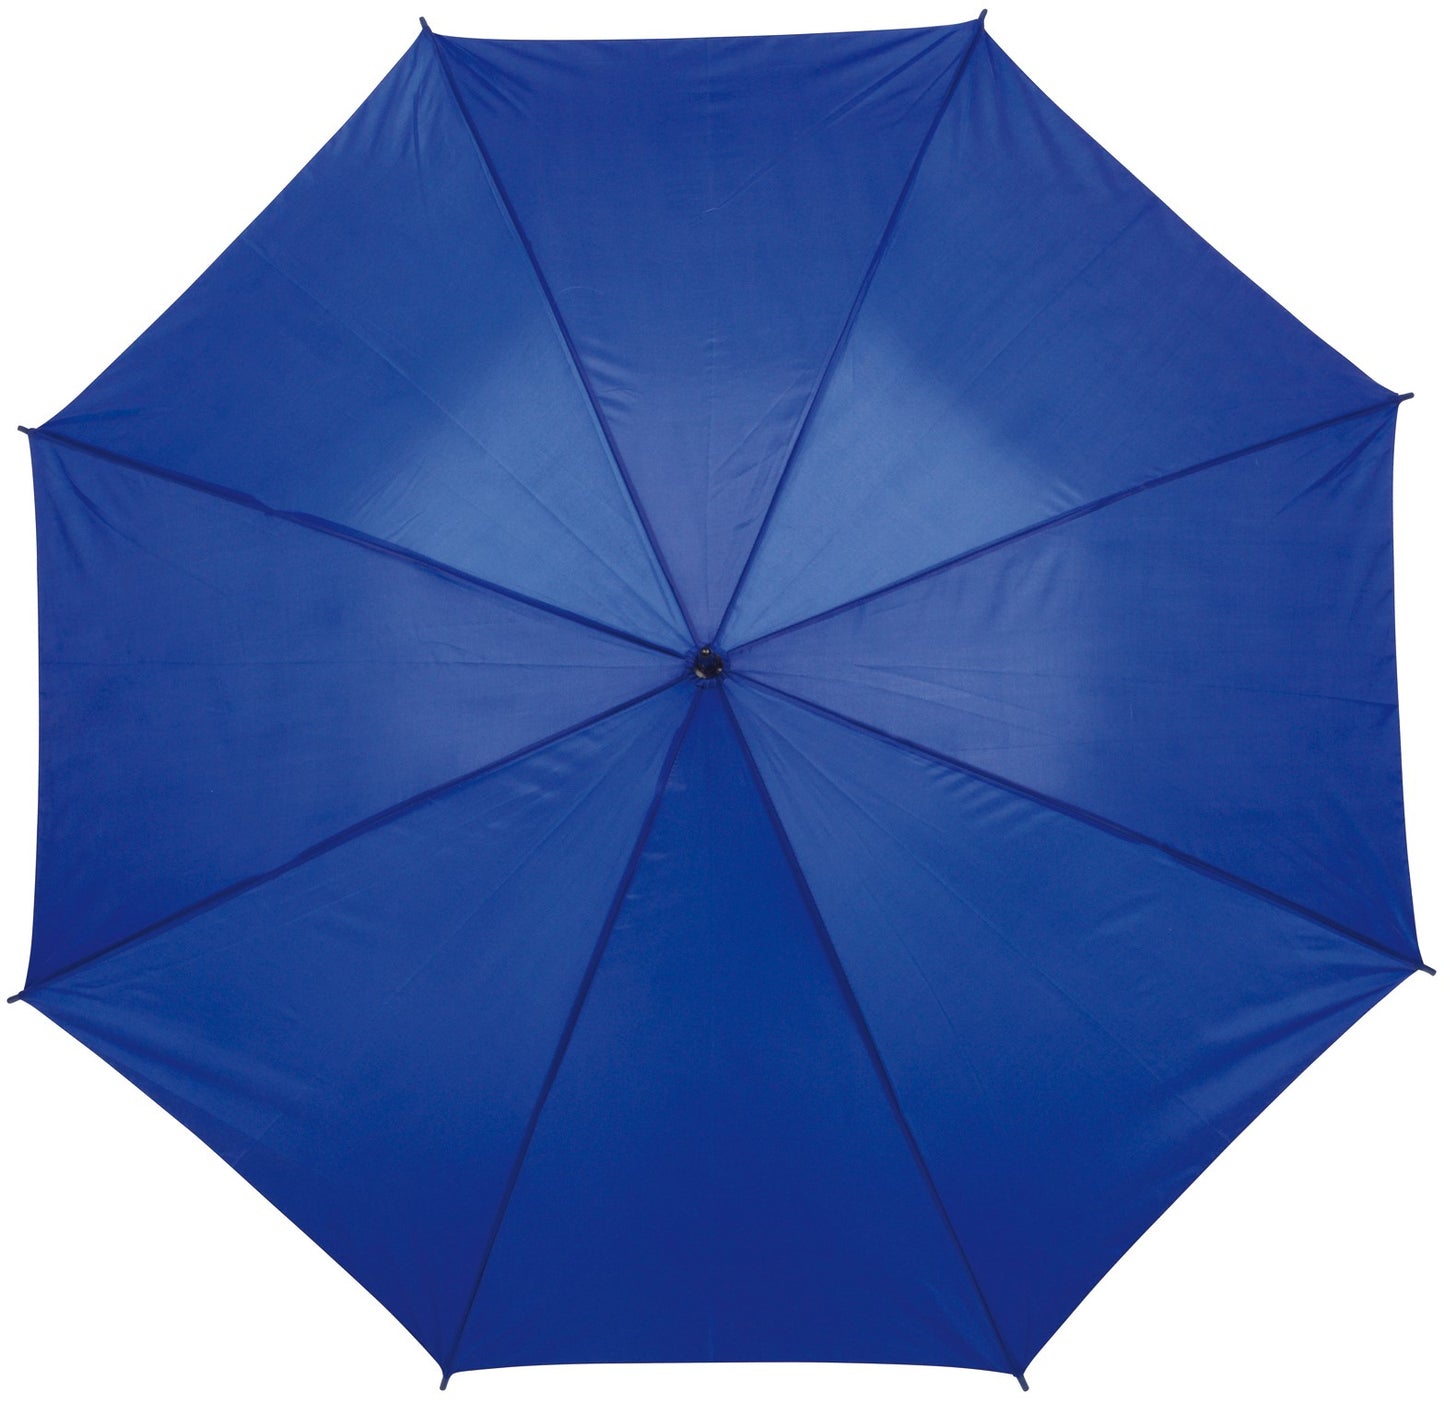 Μπλε ρουά ομπρέλα βροχής, μακριά, αυτόματη.